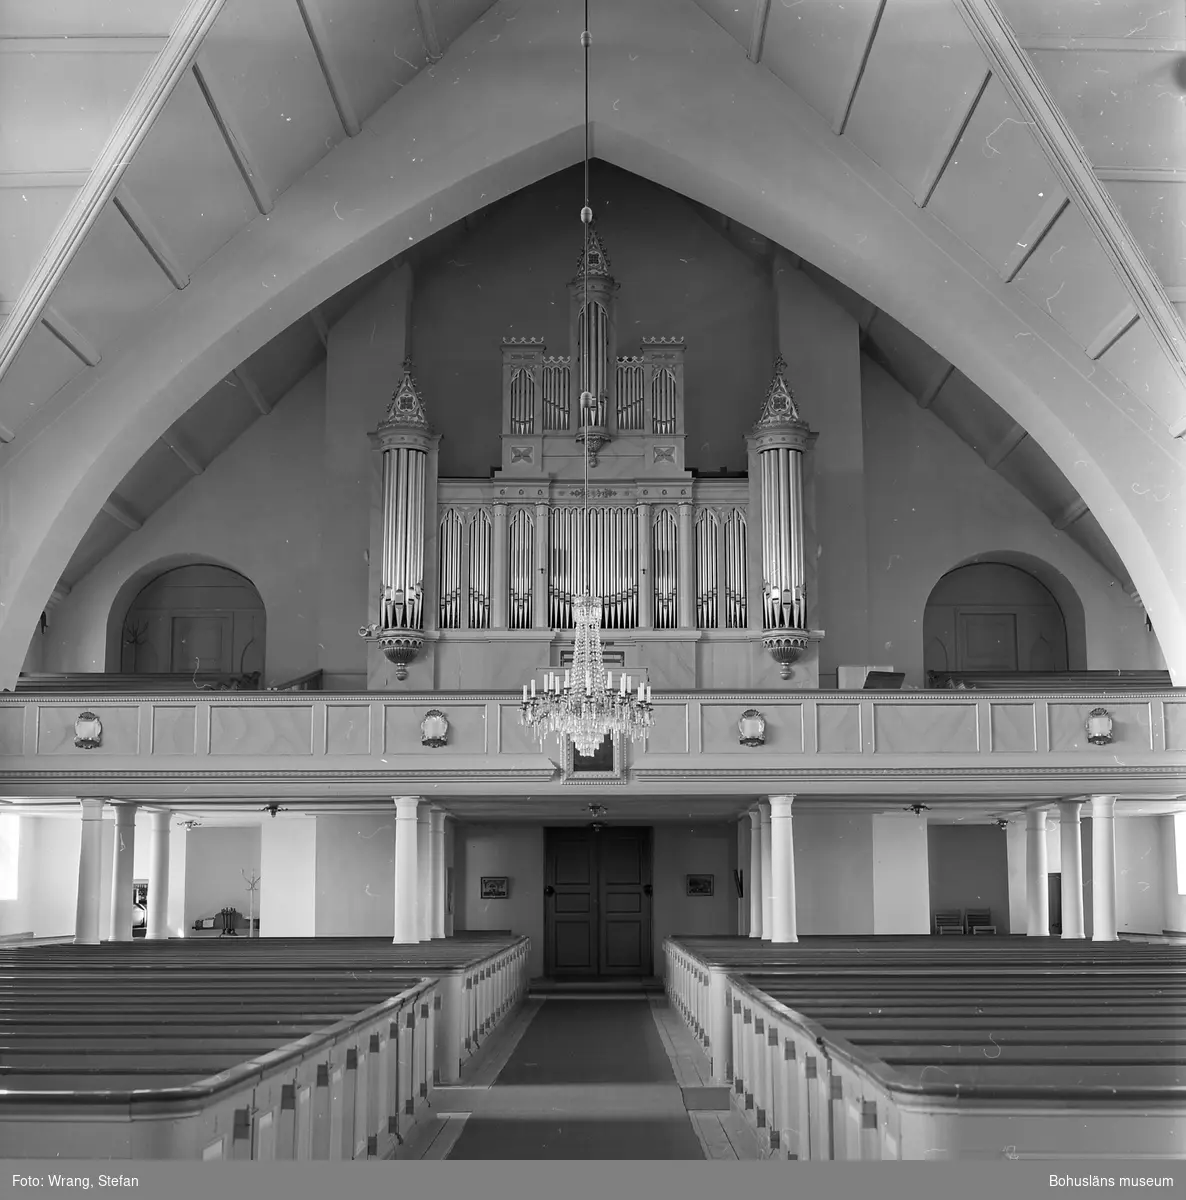 Text till bilden: "Kville kyrka. Interiör mot väster. Orgelfasad 1866".